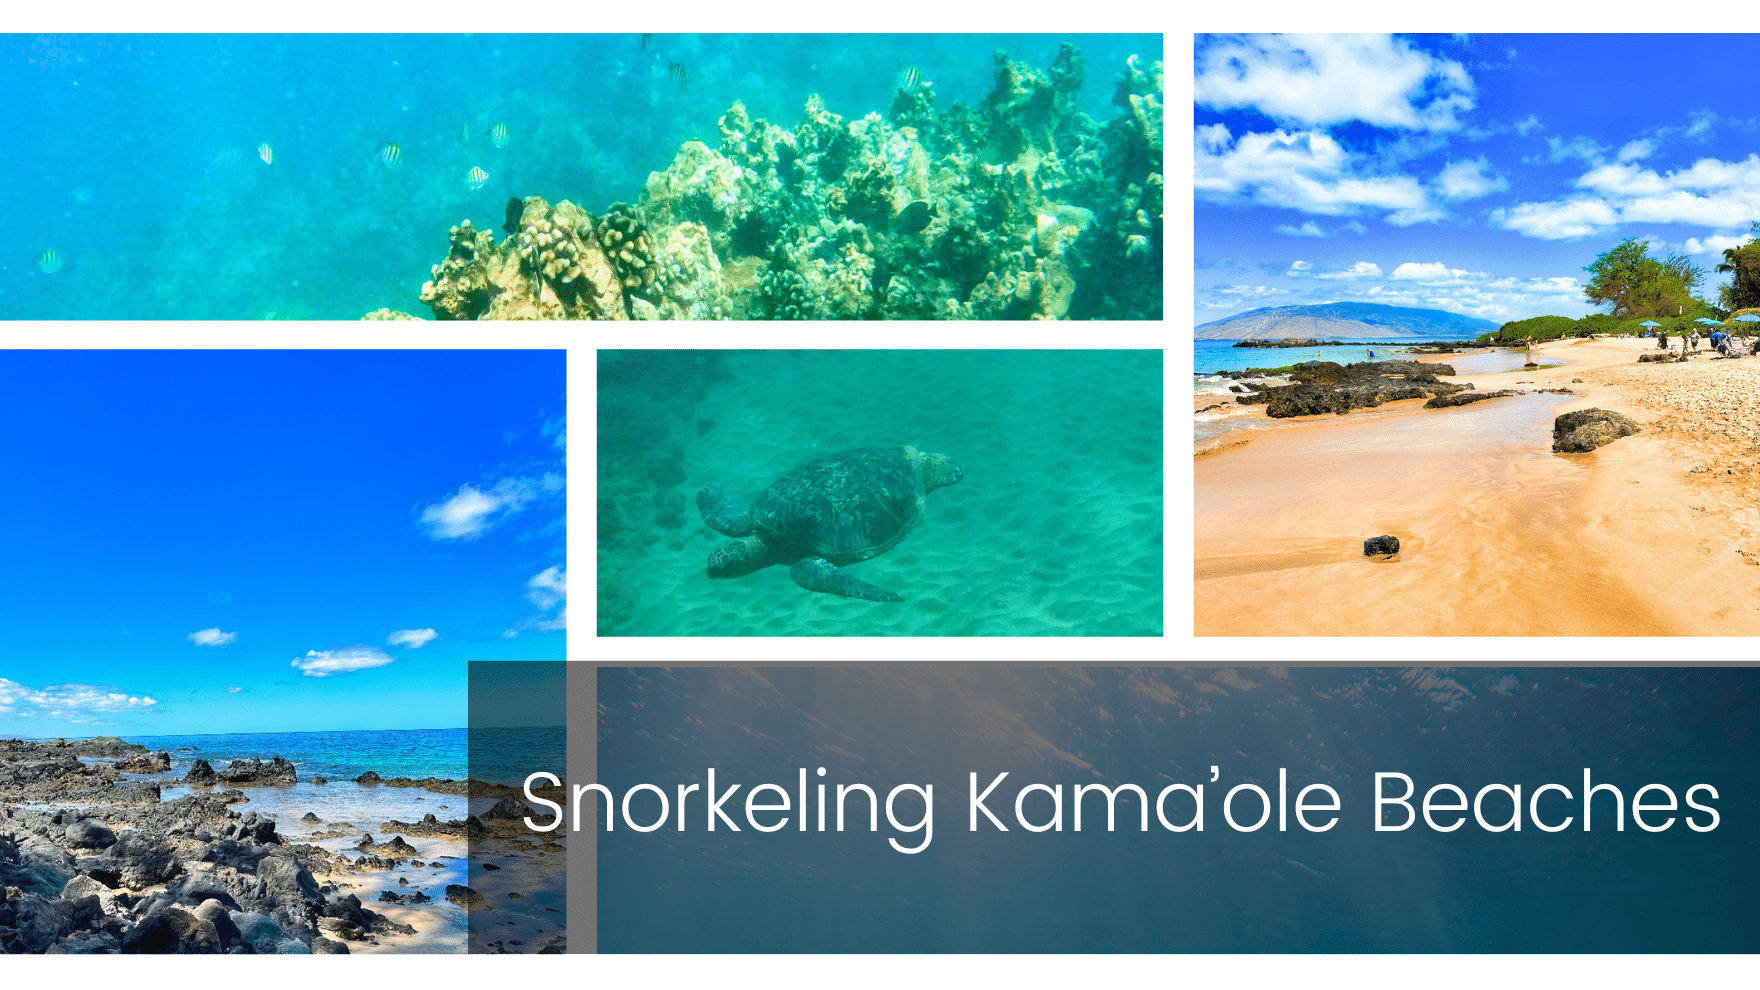 Snorkeling Kamaole Beach